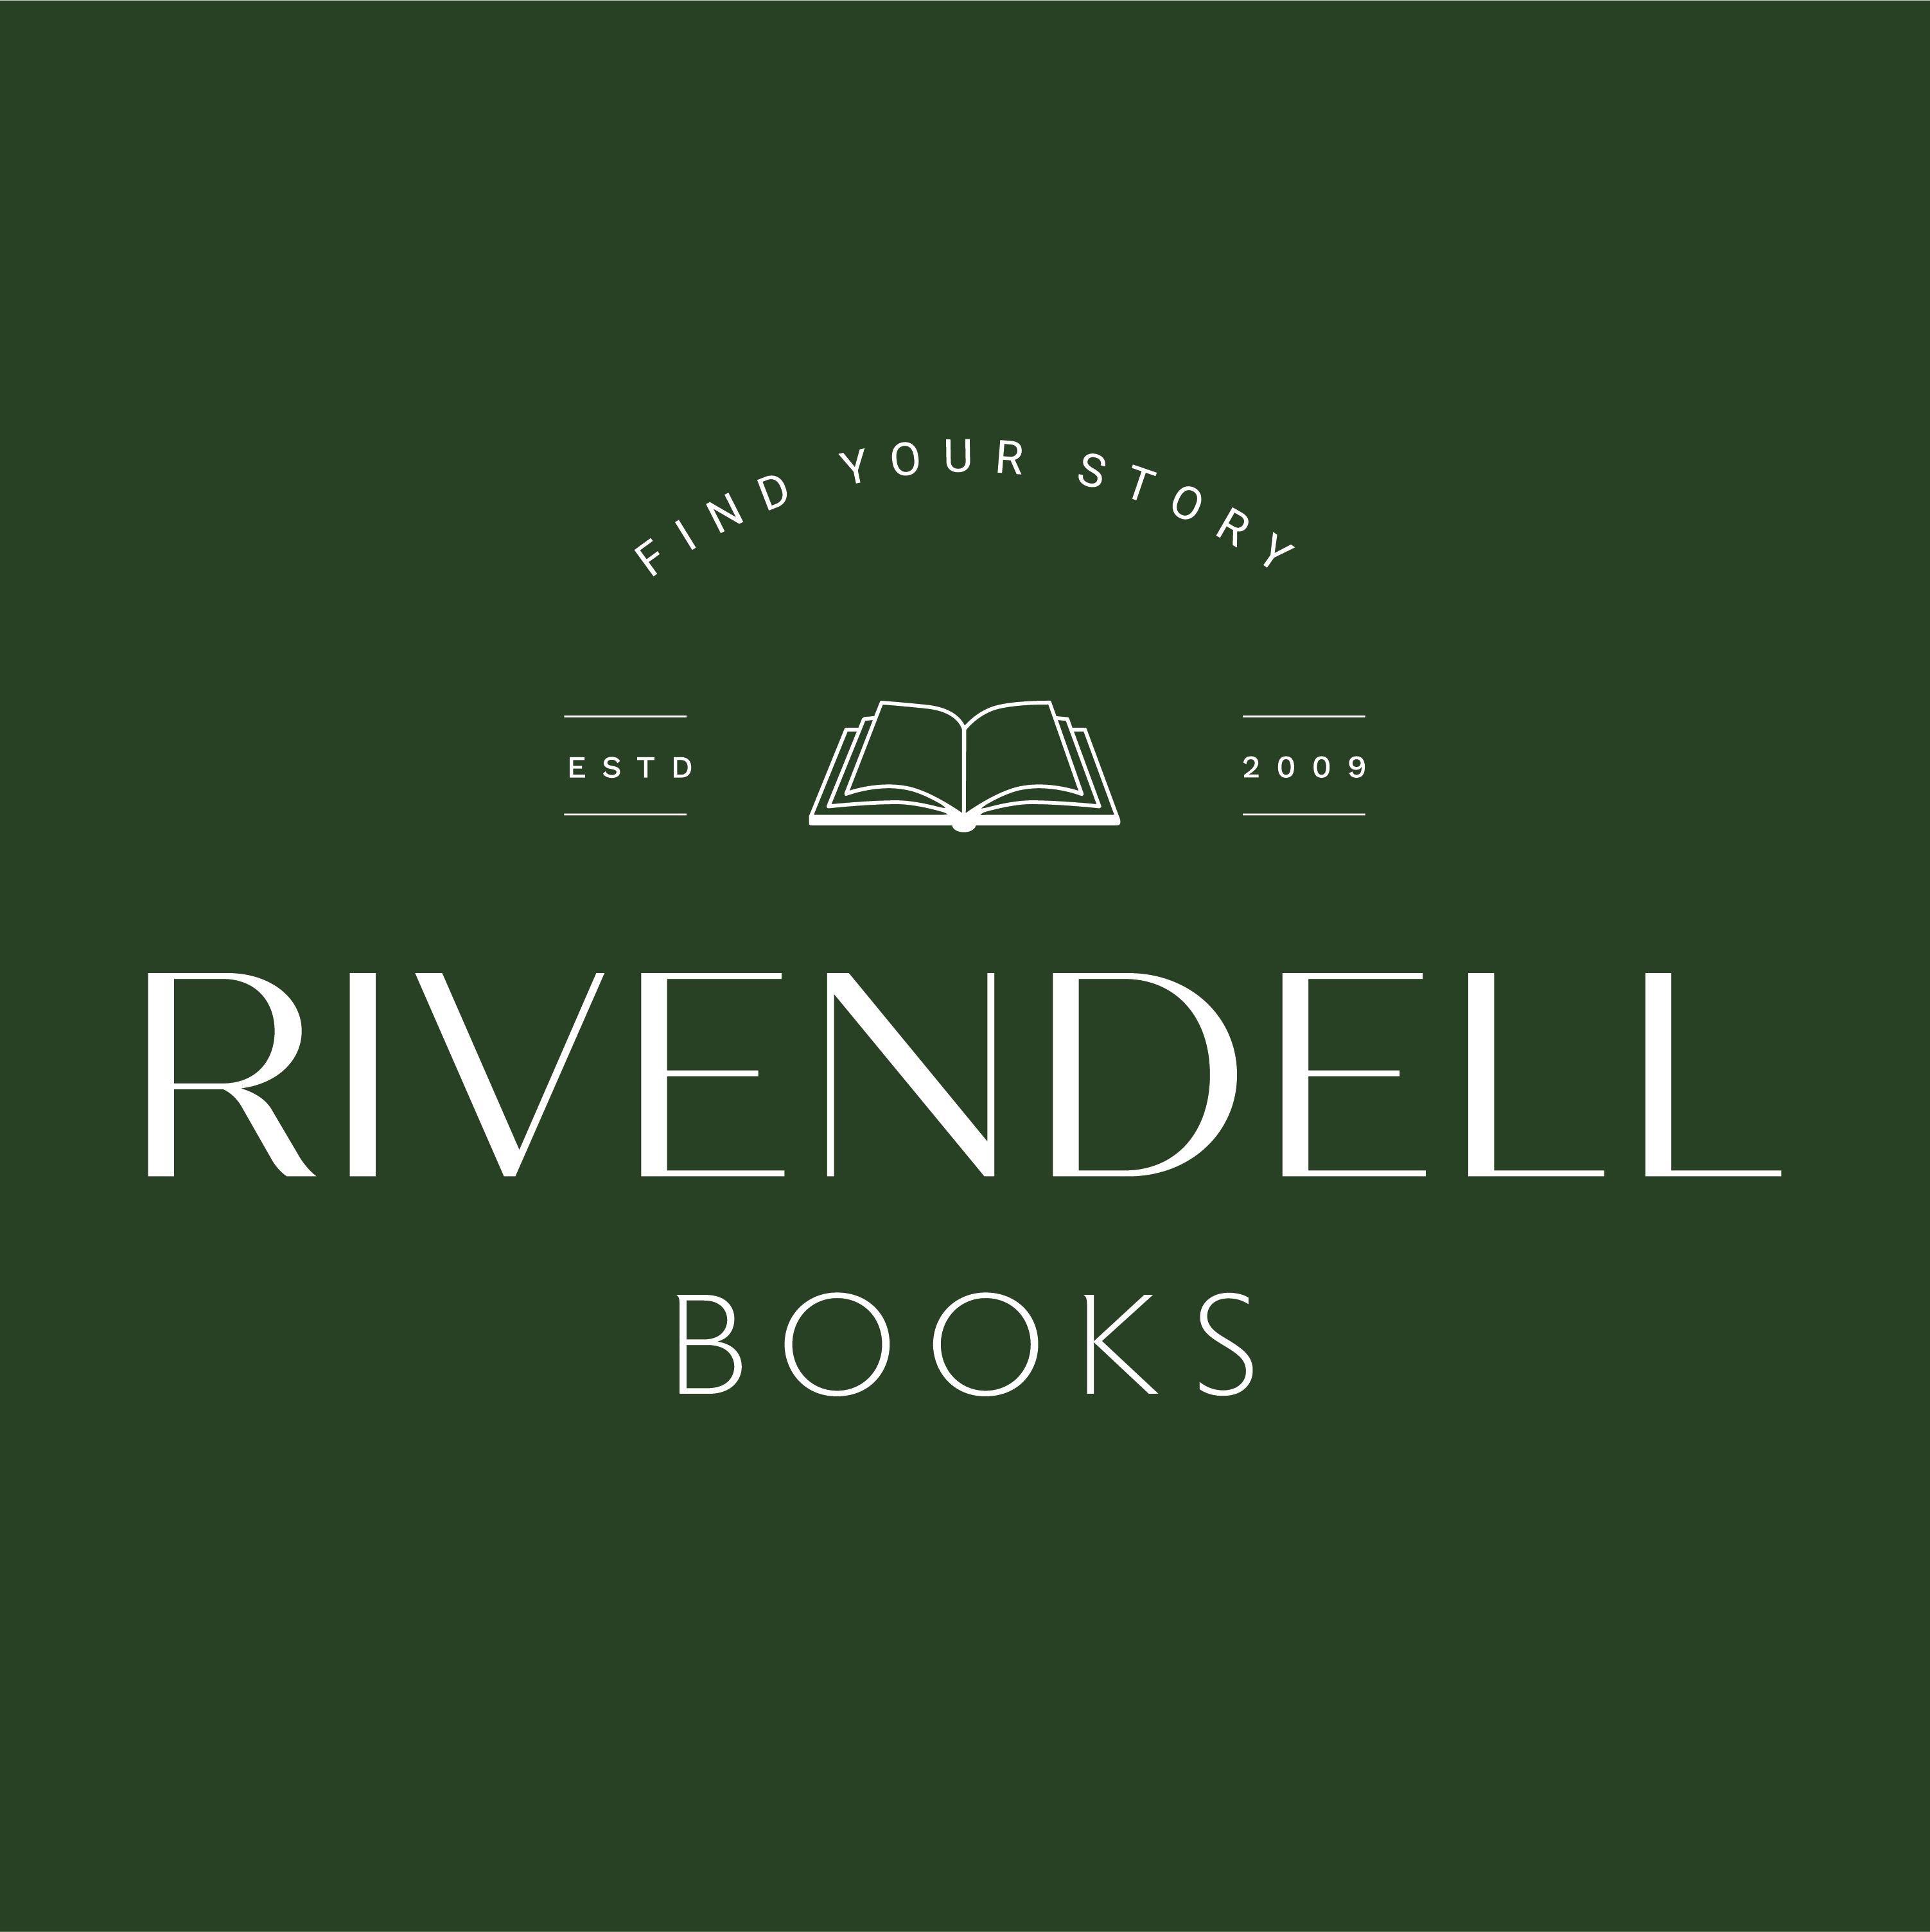 Rivendell Books– Rivendell Books